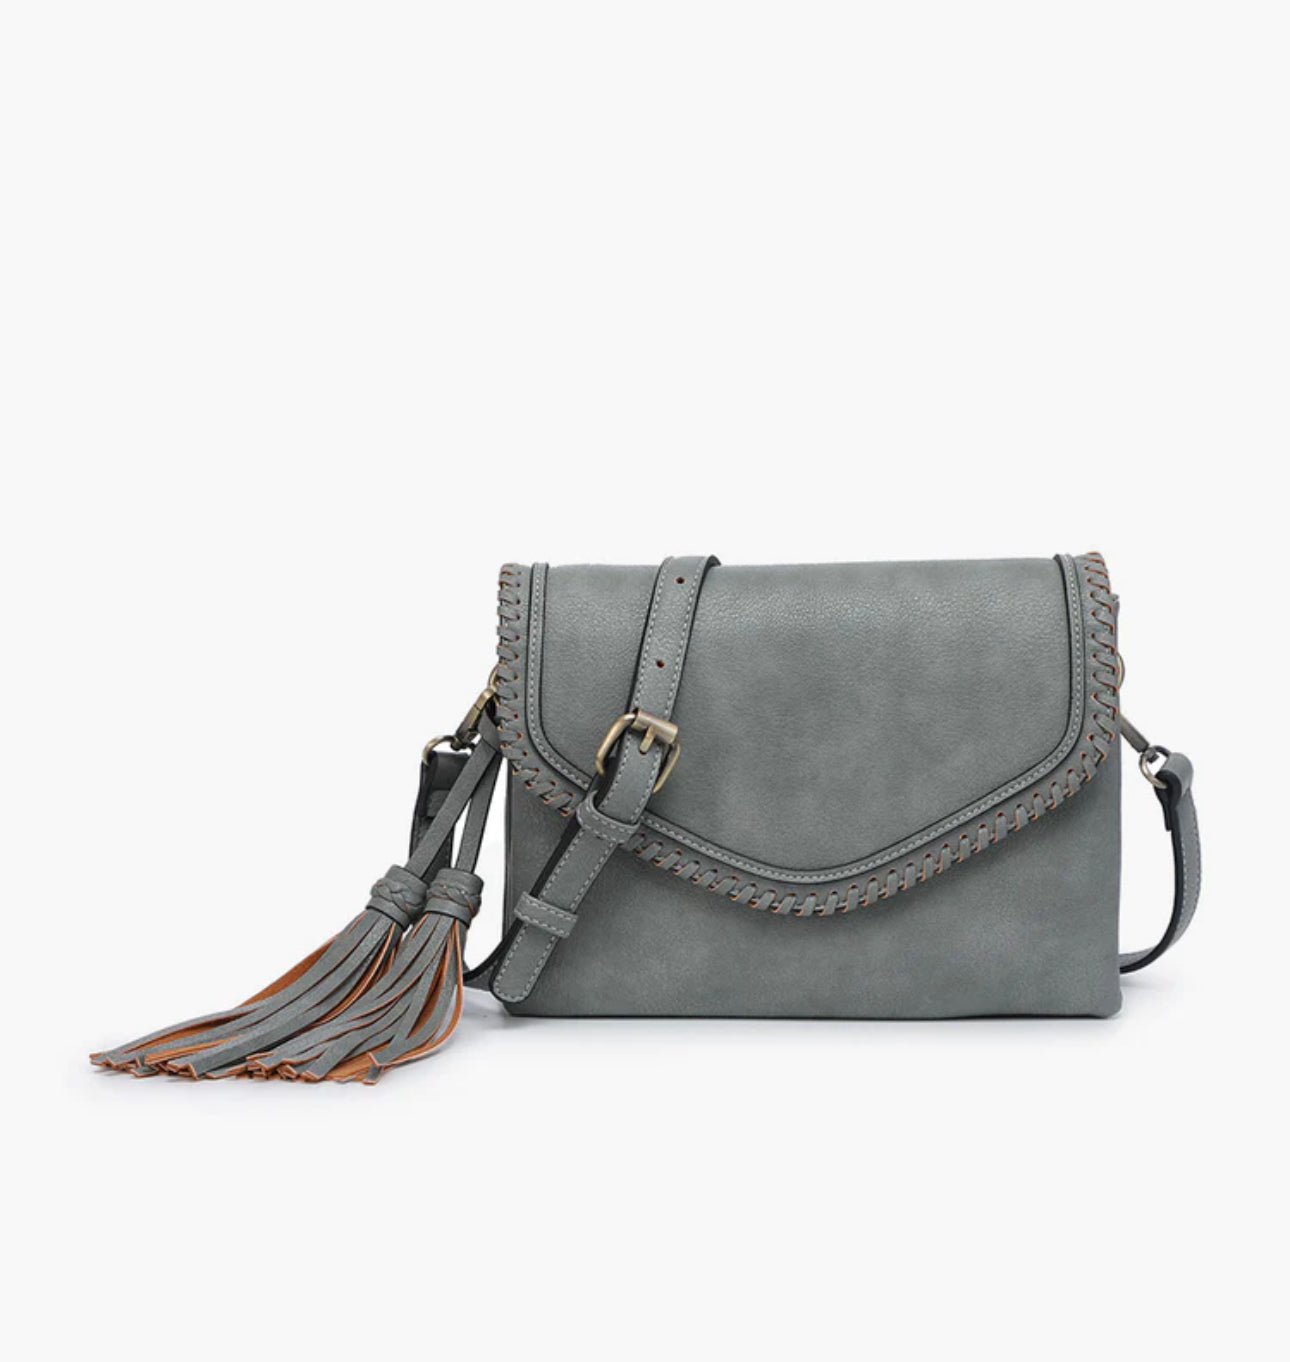 Sloane Crossbody Bag by Jen & Co.